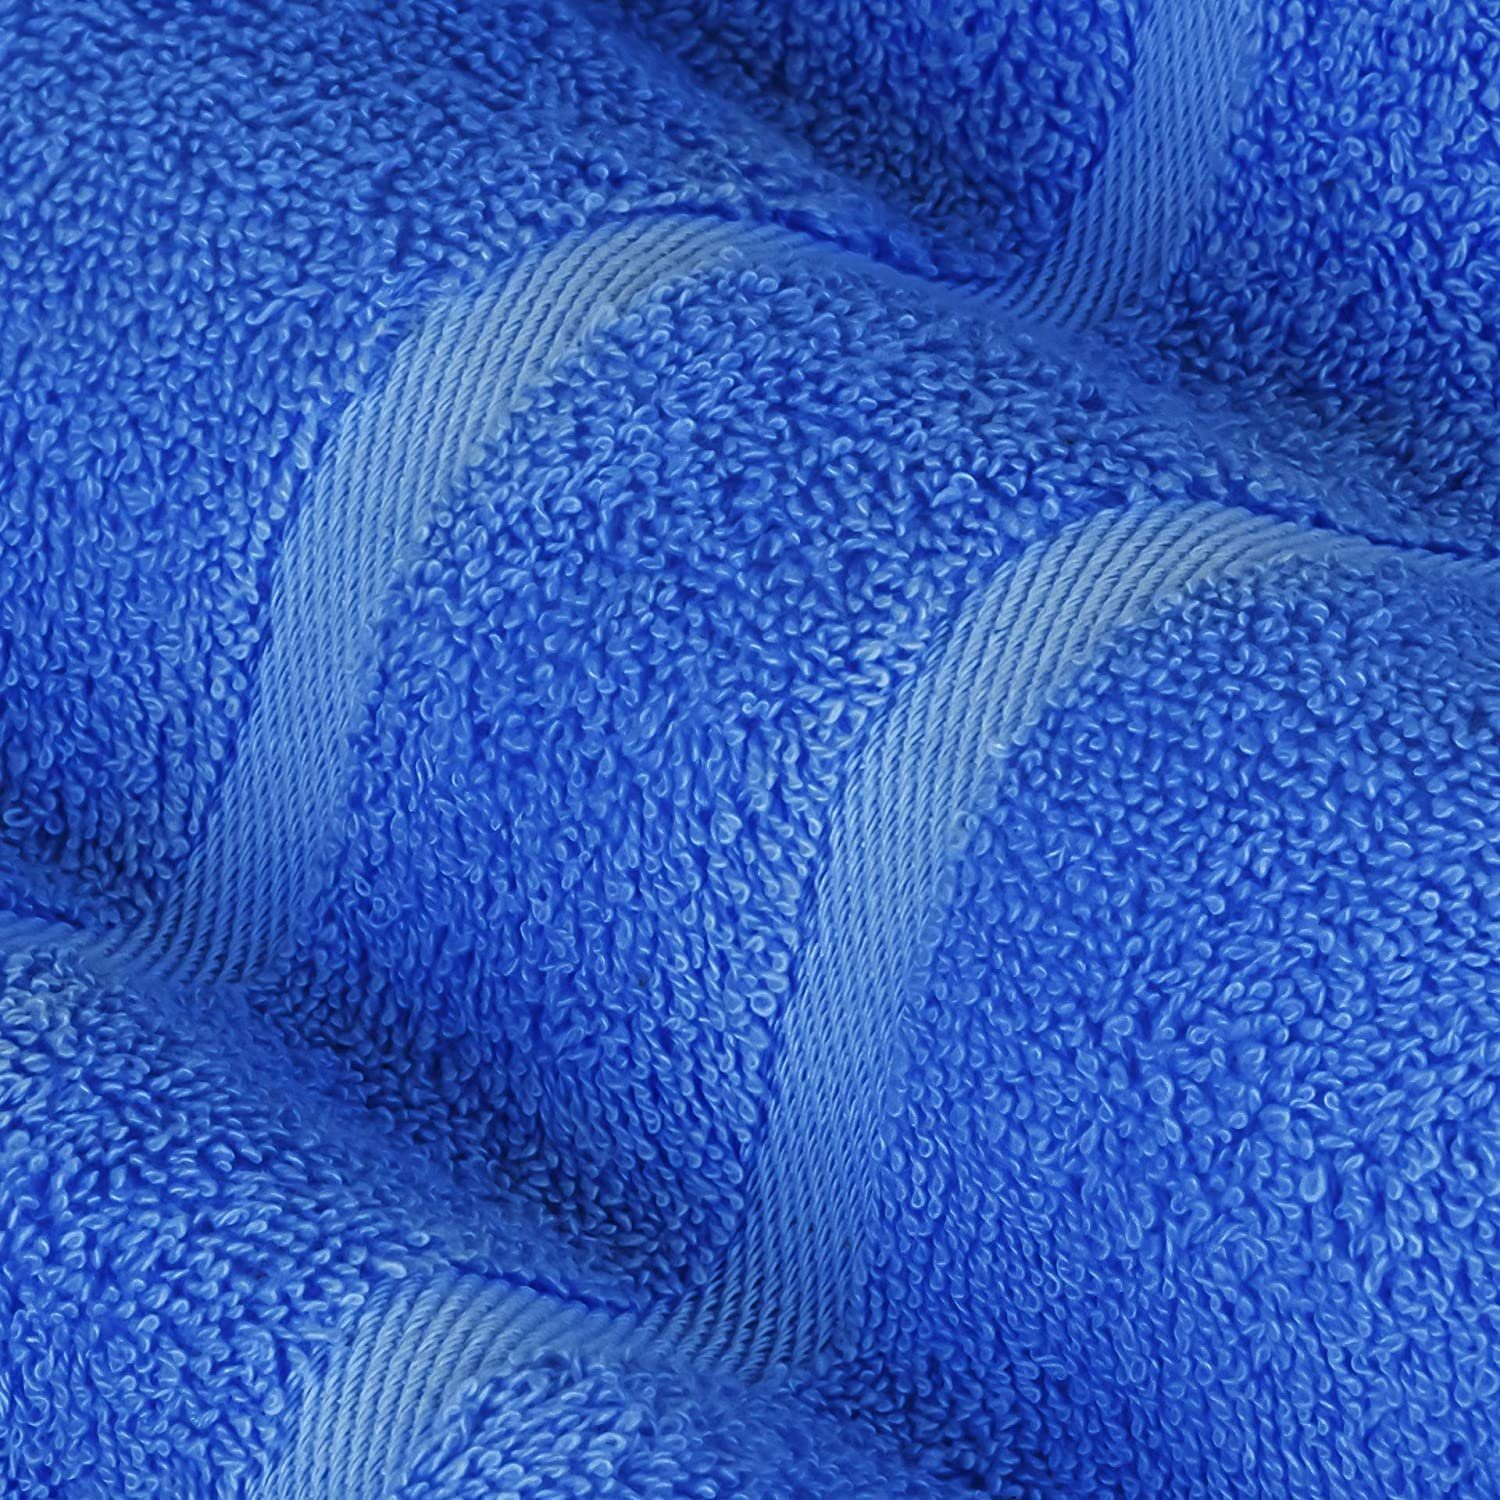 Baumwolle SET GSM Farben 2x 100% in 4x Duschtücher Handtuch (8 2x GSM Teilig) Pack, 8er Gästehandtuch Frottee Blau verschiedenen 500 Handtücher 500 Set Baumwolle 100% Handtuch StickandShine als